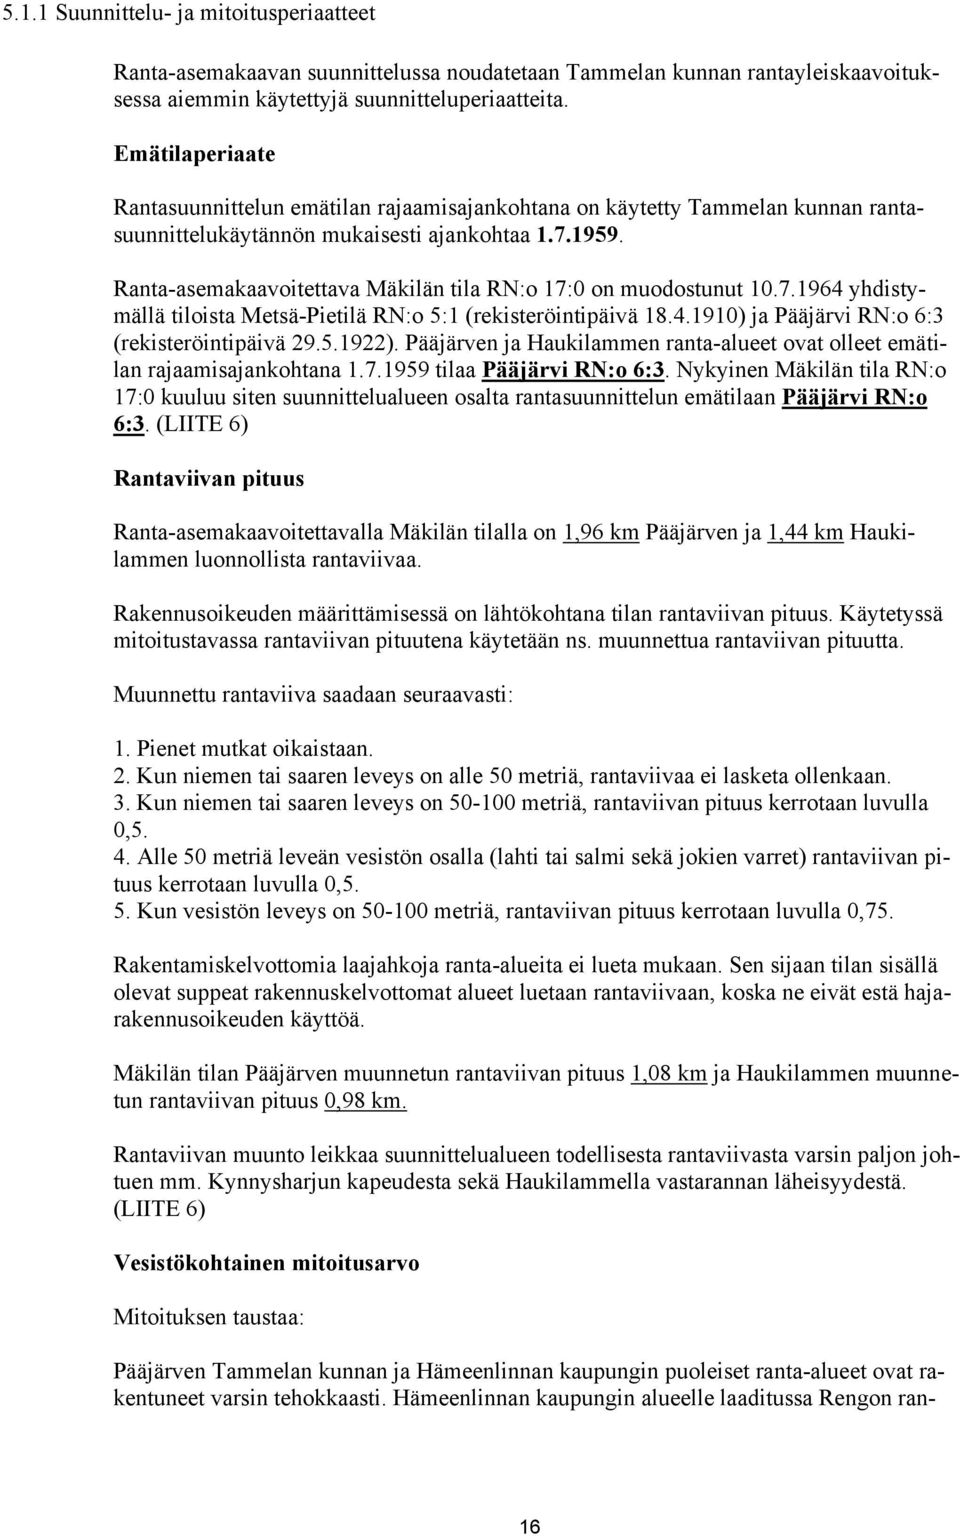 Ranta-asemakaavoitettava Mäkilän tila RN:o 17:0 on muodostunut 10.7.1964 yhdistymällä tiloista Metsä-Pietilä RN:o 5:1 (rekisteröintipäivä 18.4.1910) ja Pääjärvi RN:o 6:3 (rekisteröintipäivä 29.5.1922).